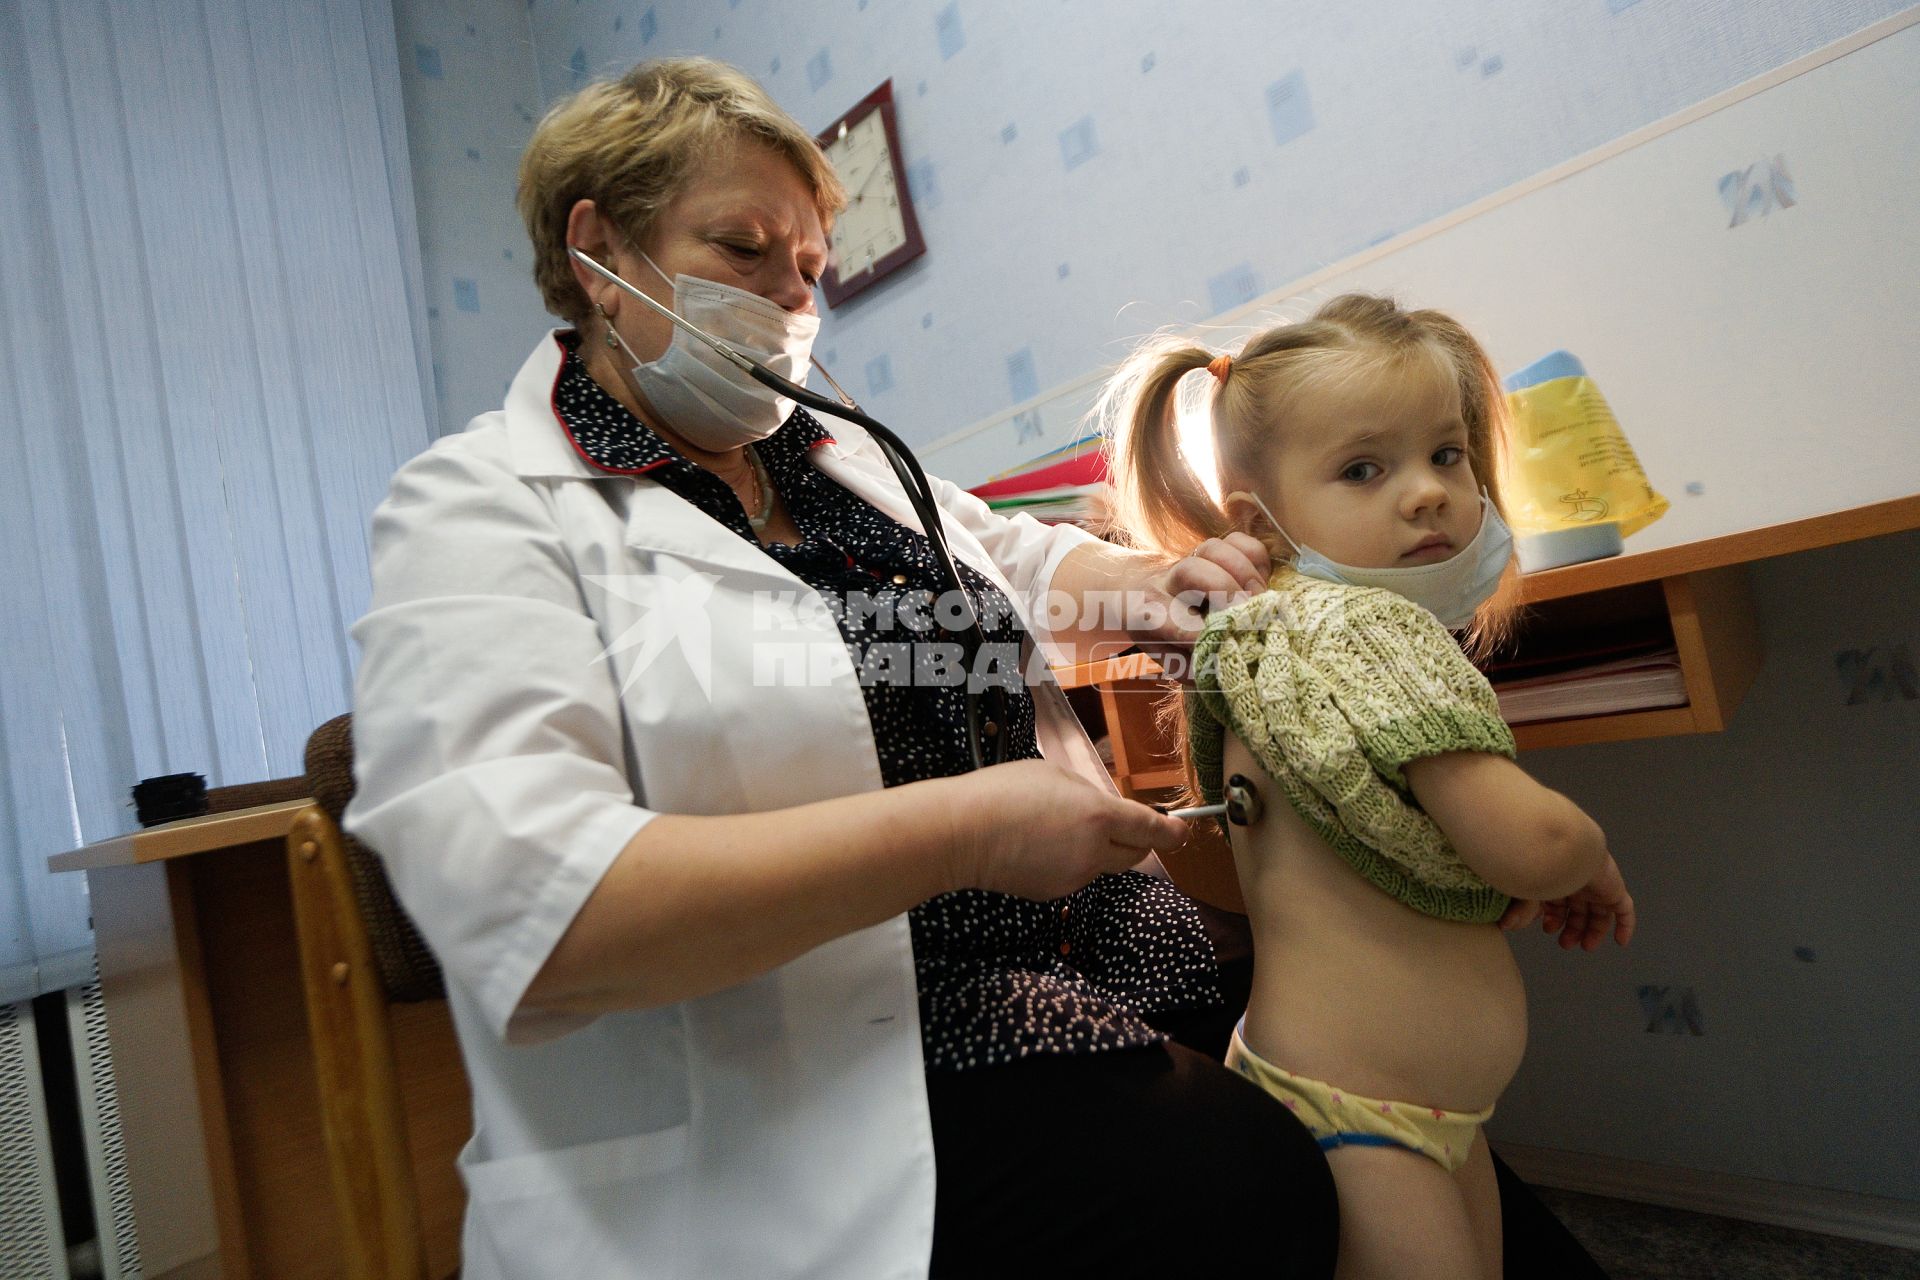 Медицинский осмотр детей в детском садике. На снимке: медицинский ребенок проверяет состояние легких ребенка с помощью стетоскопа.